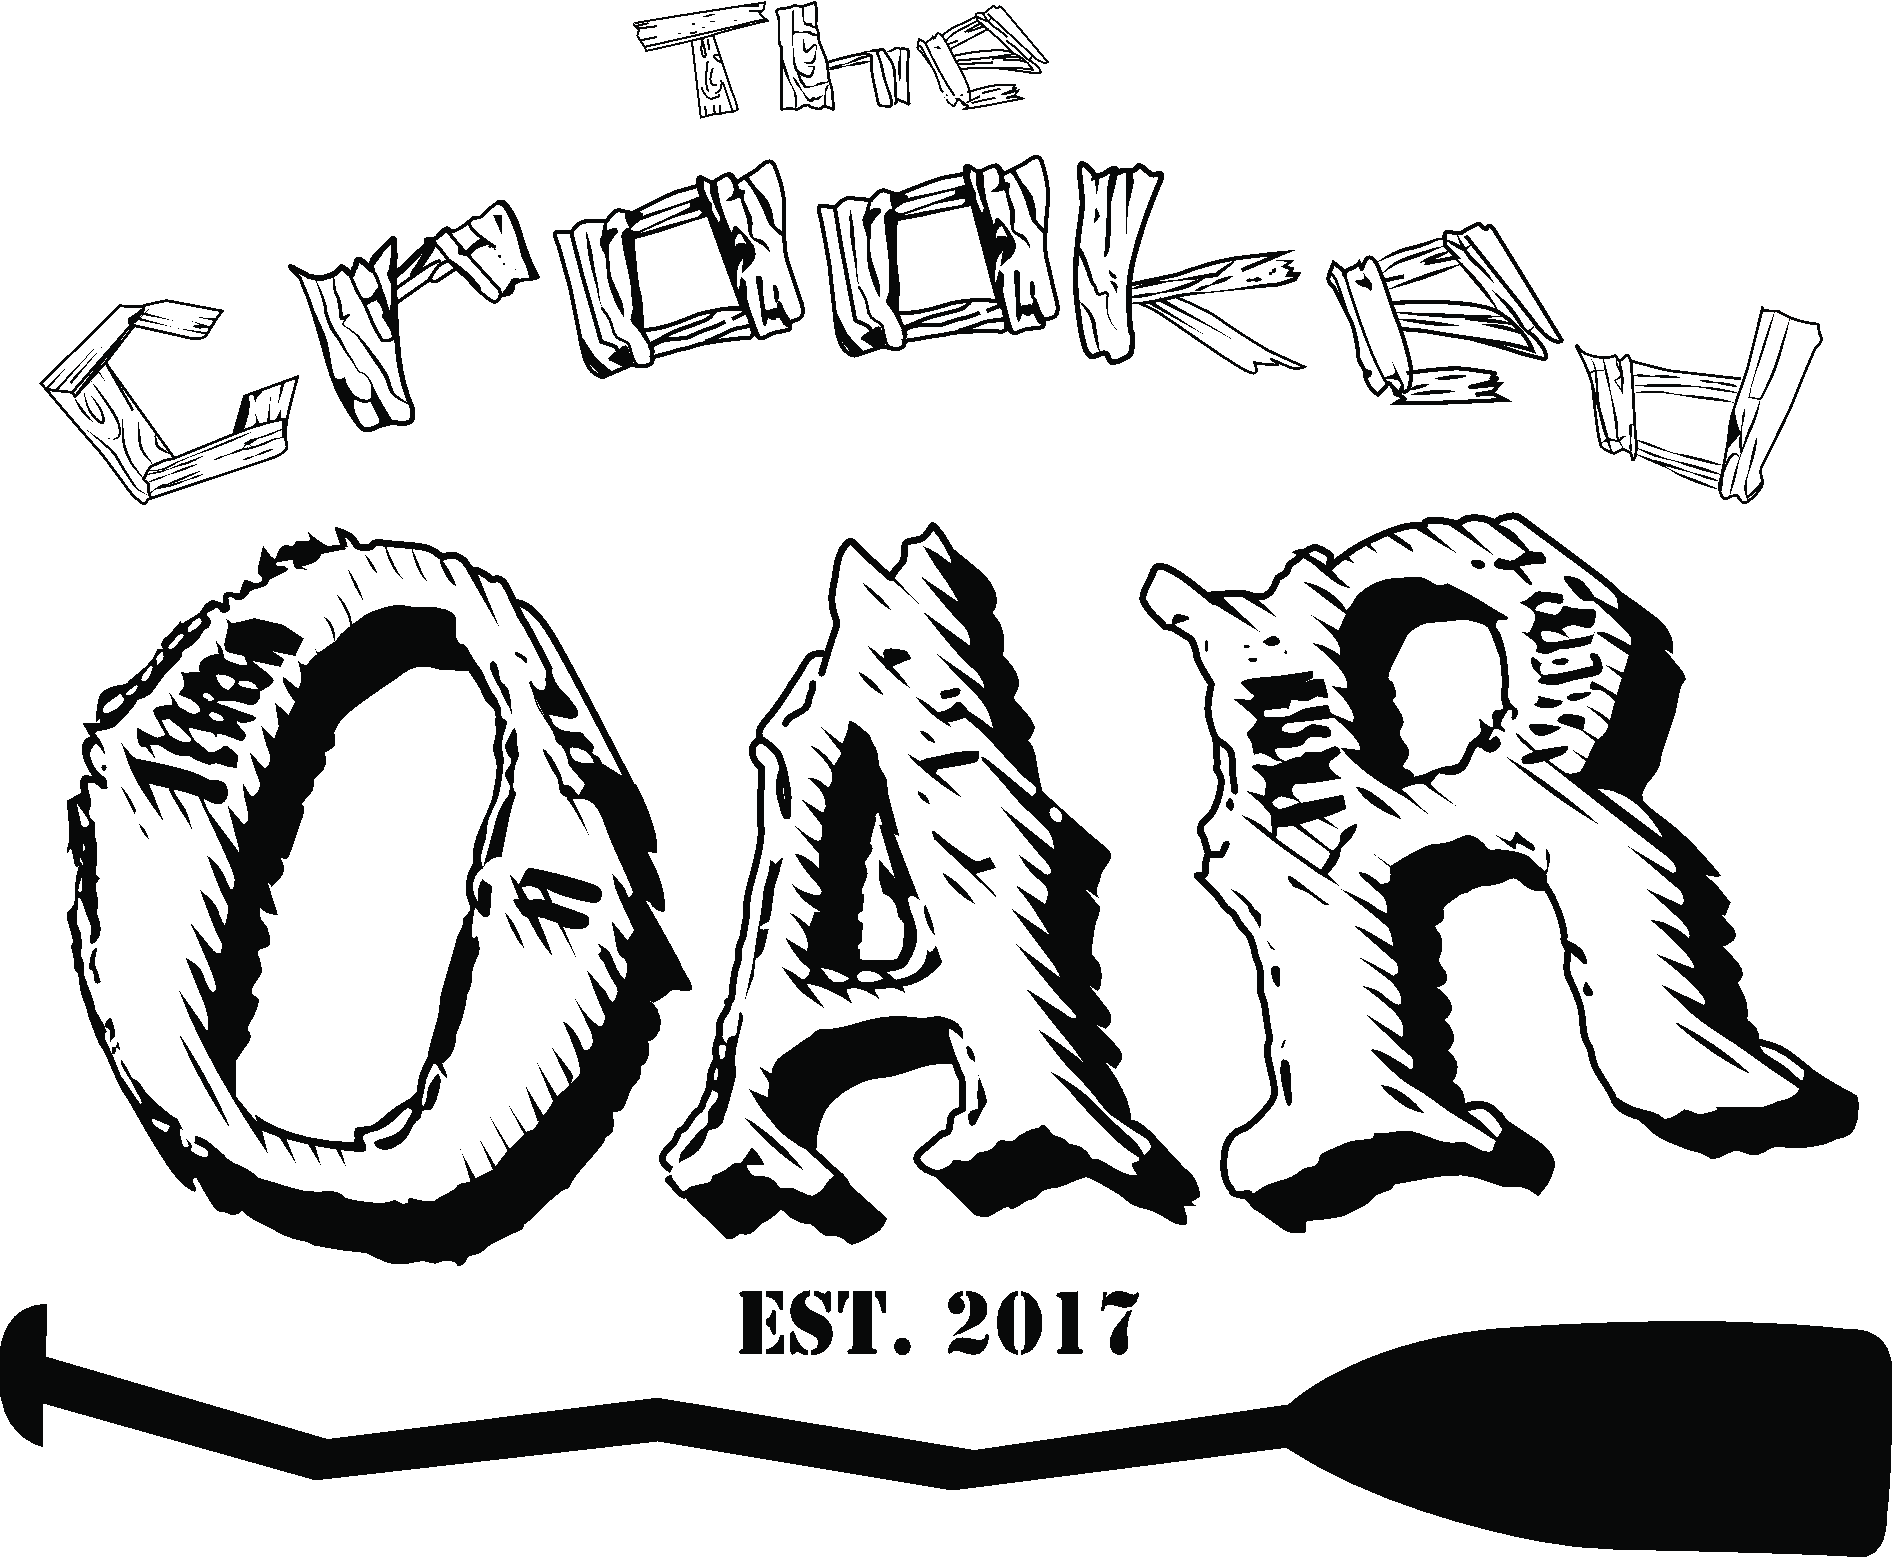 The Crooked Oar